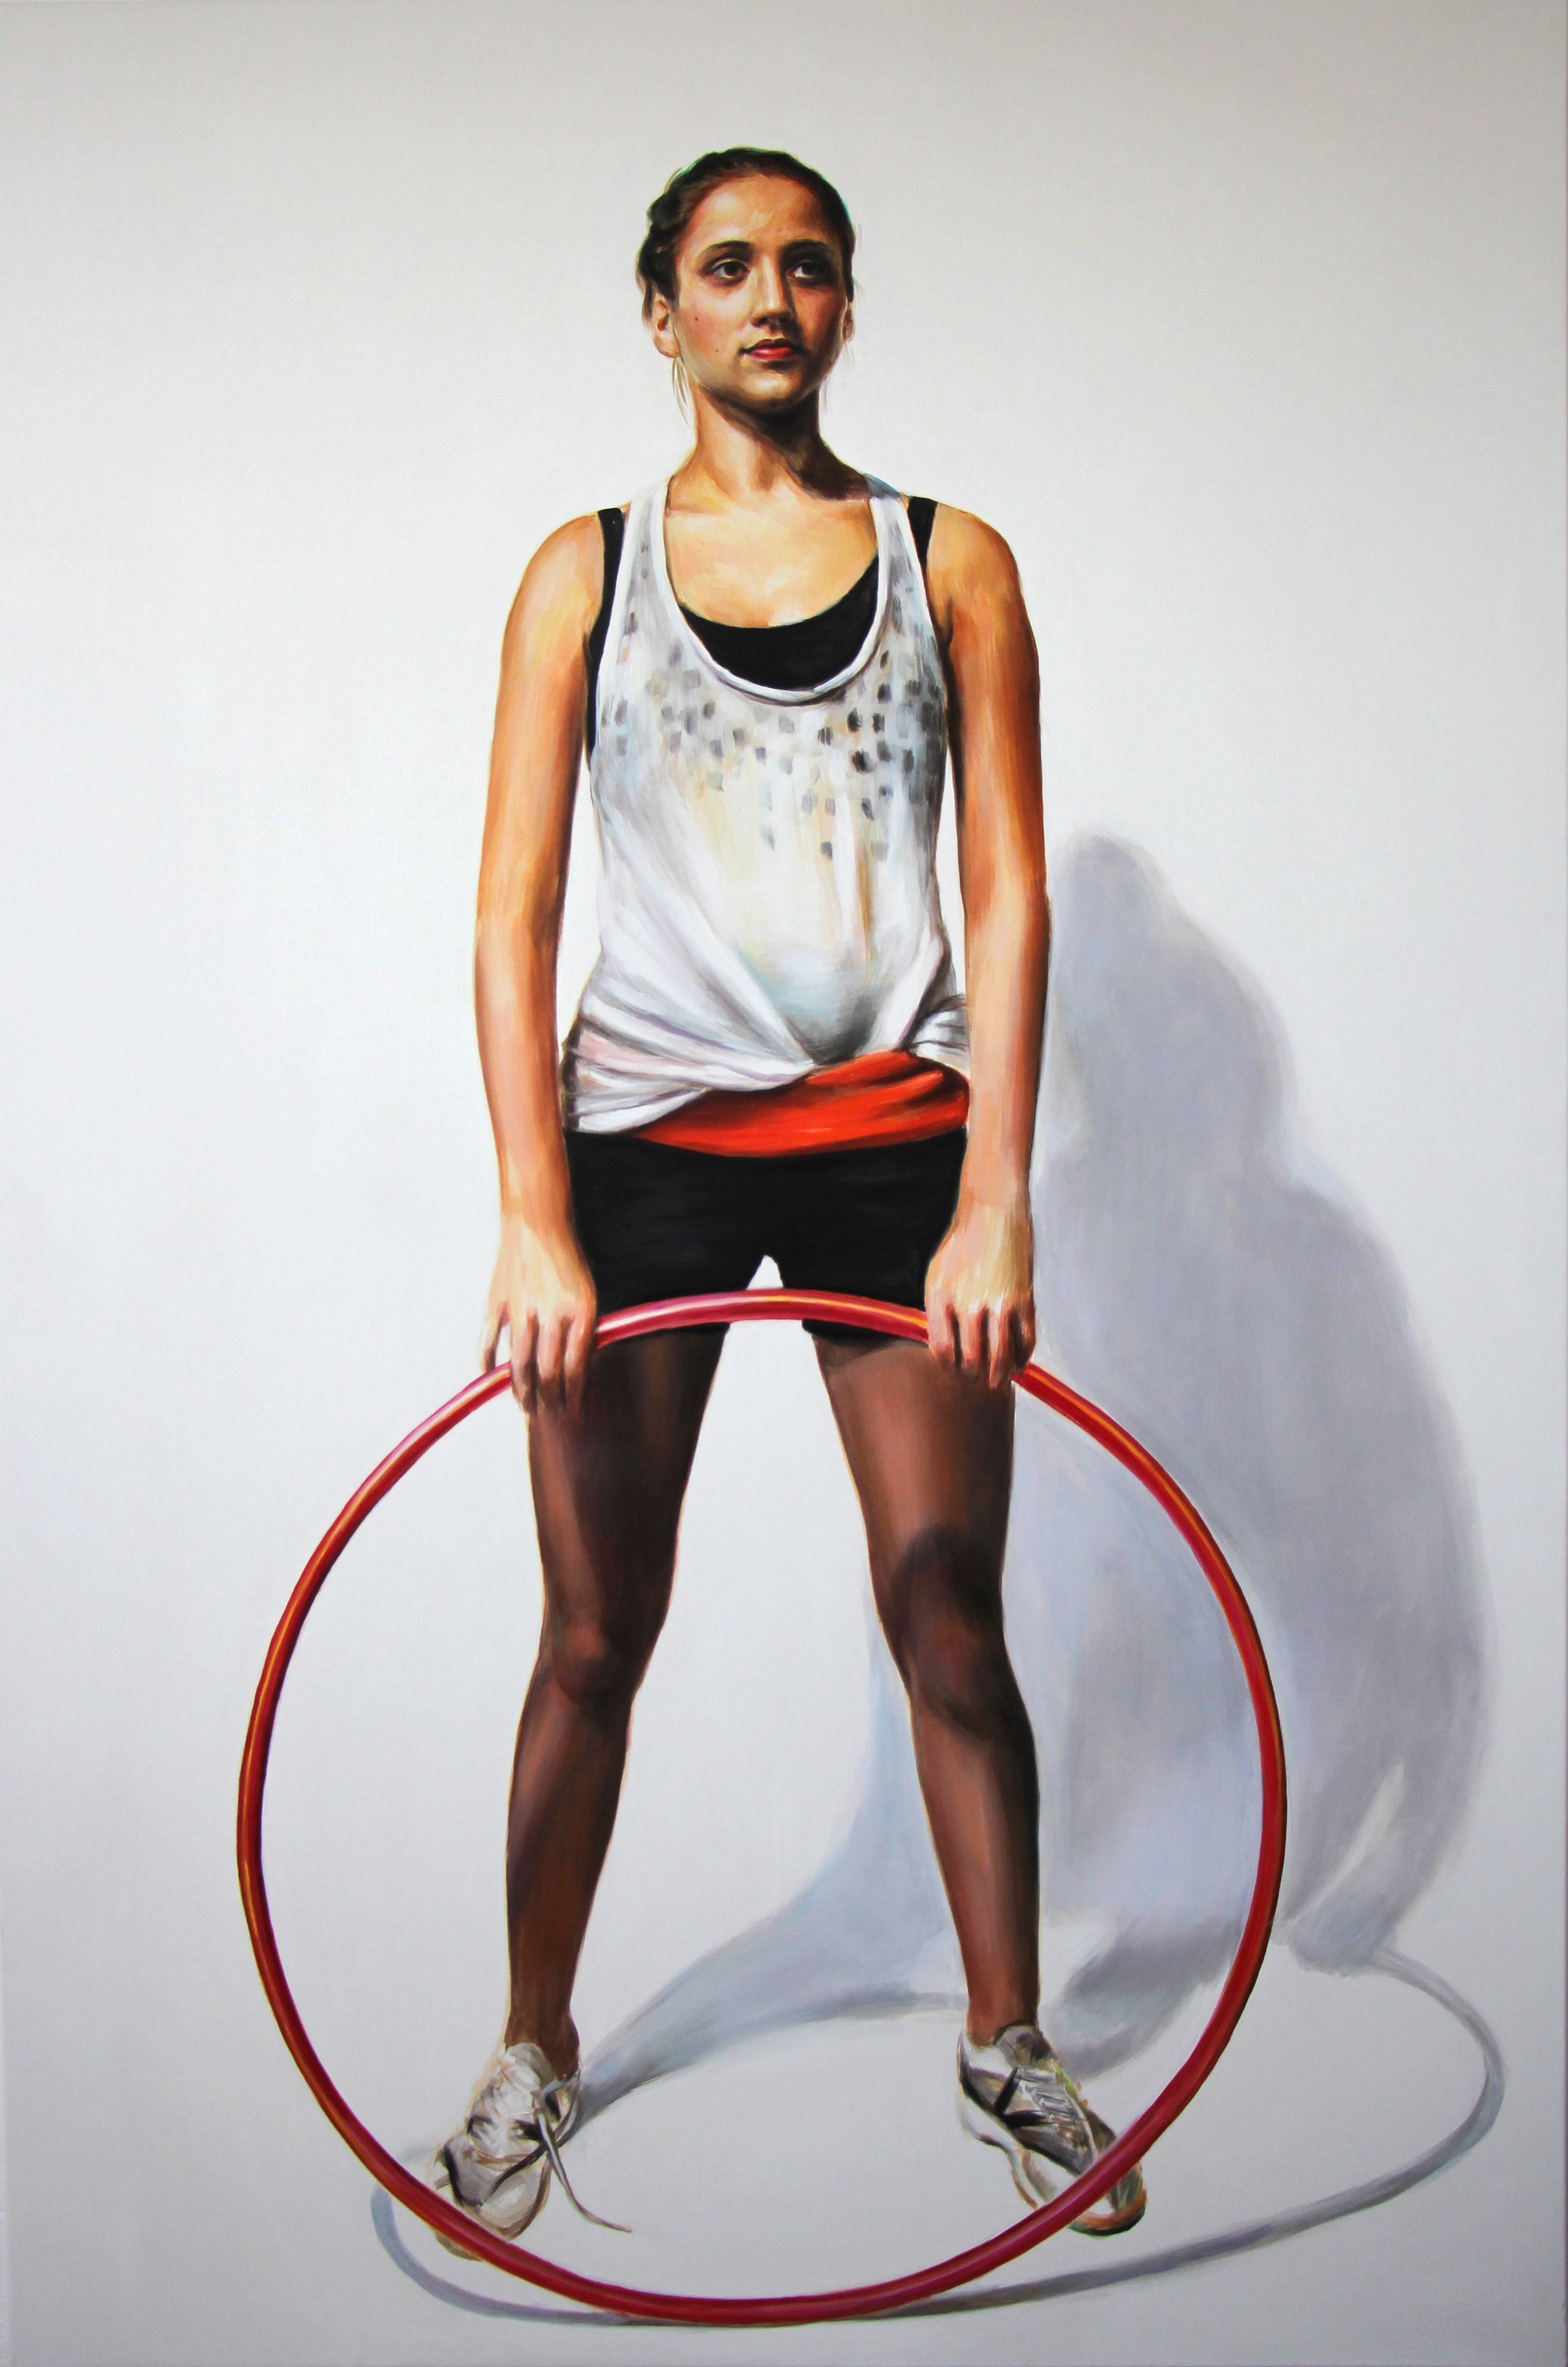 Gymnaste 5 (justina) - Huile sur toile, 195 x 130 cm, 2017.